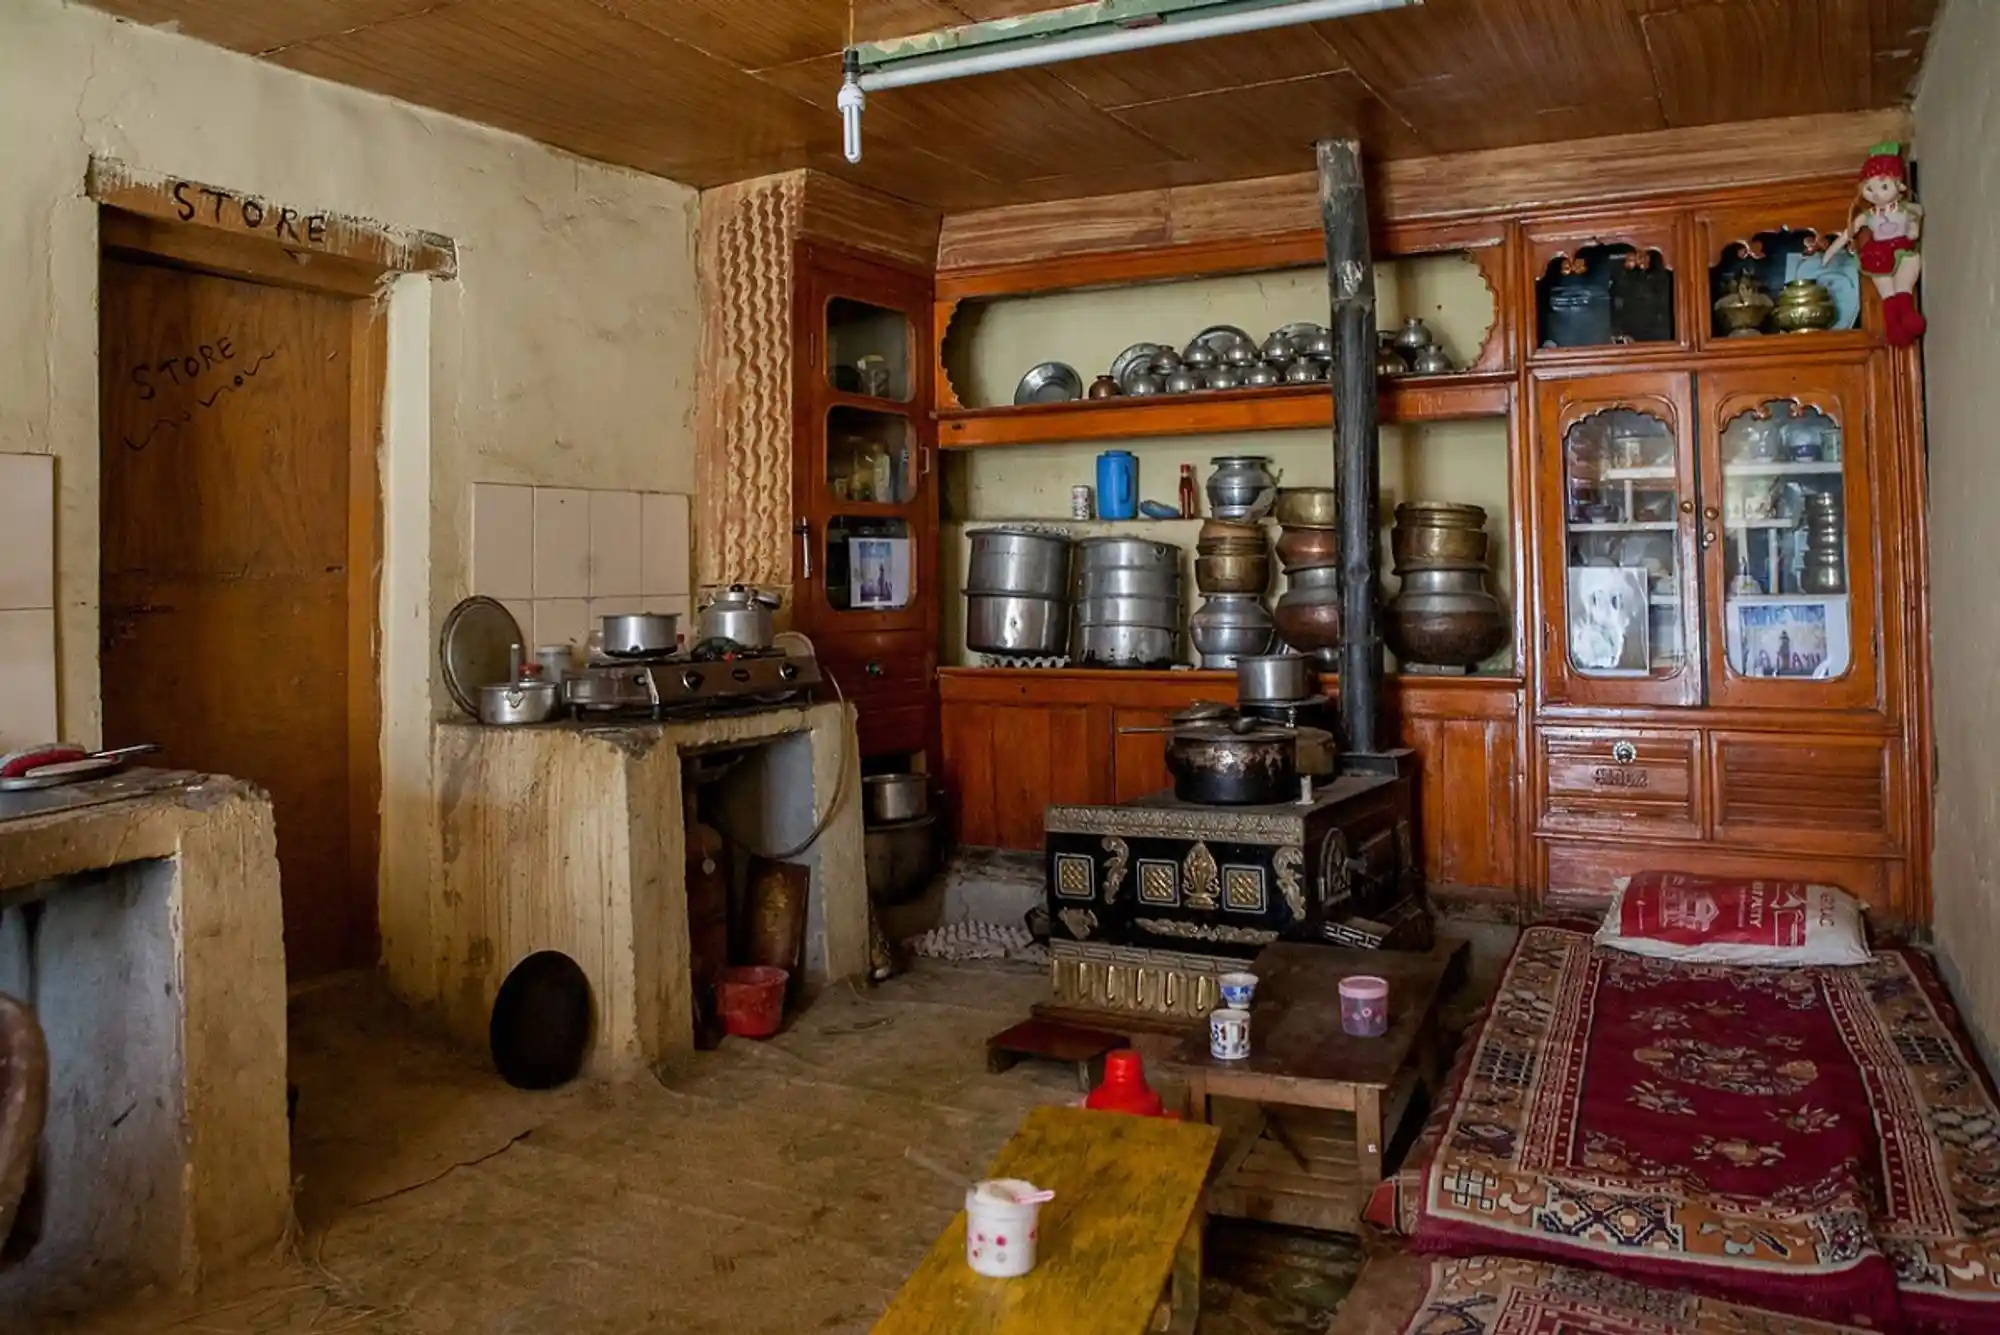 A kitchen in Lamayuru; Image Source: Sandeepachetan’s Travel Blog